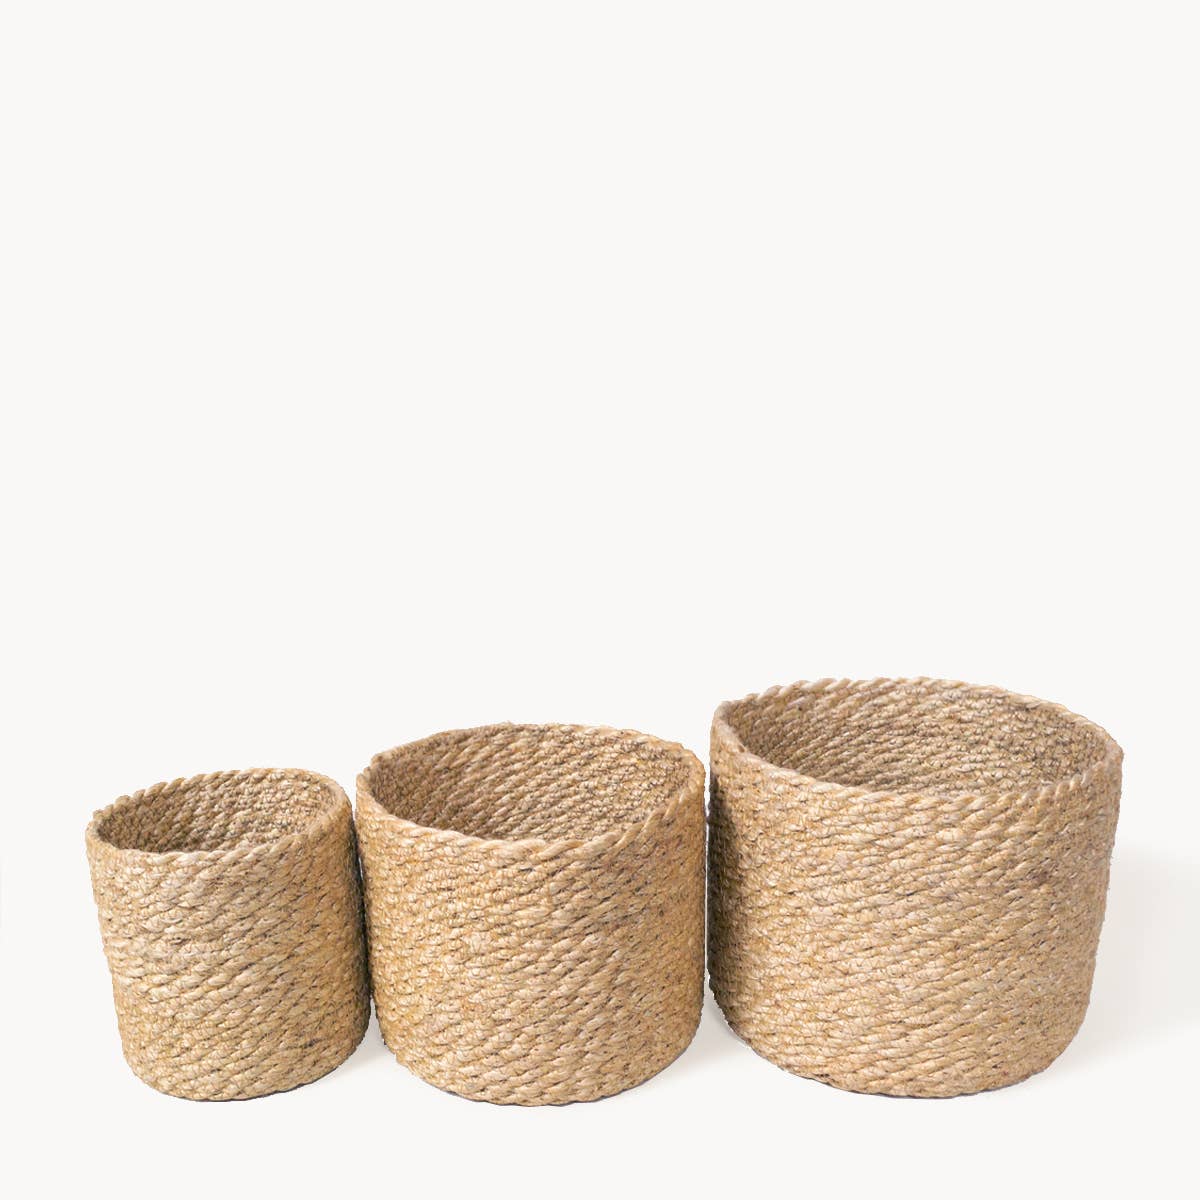 Handwoven Wicker Storage Basket l Kata Bin -Set of 3 - Lemon & Lavender